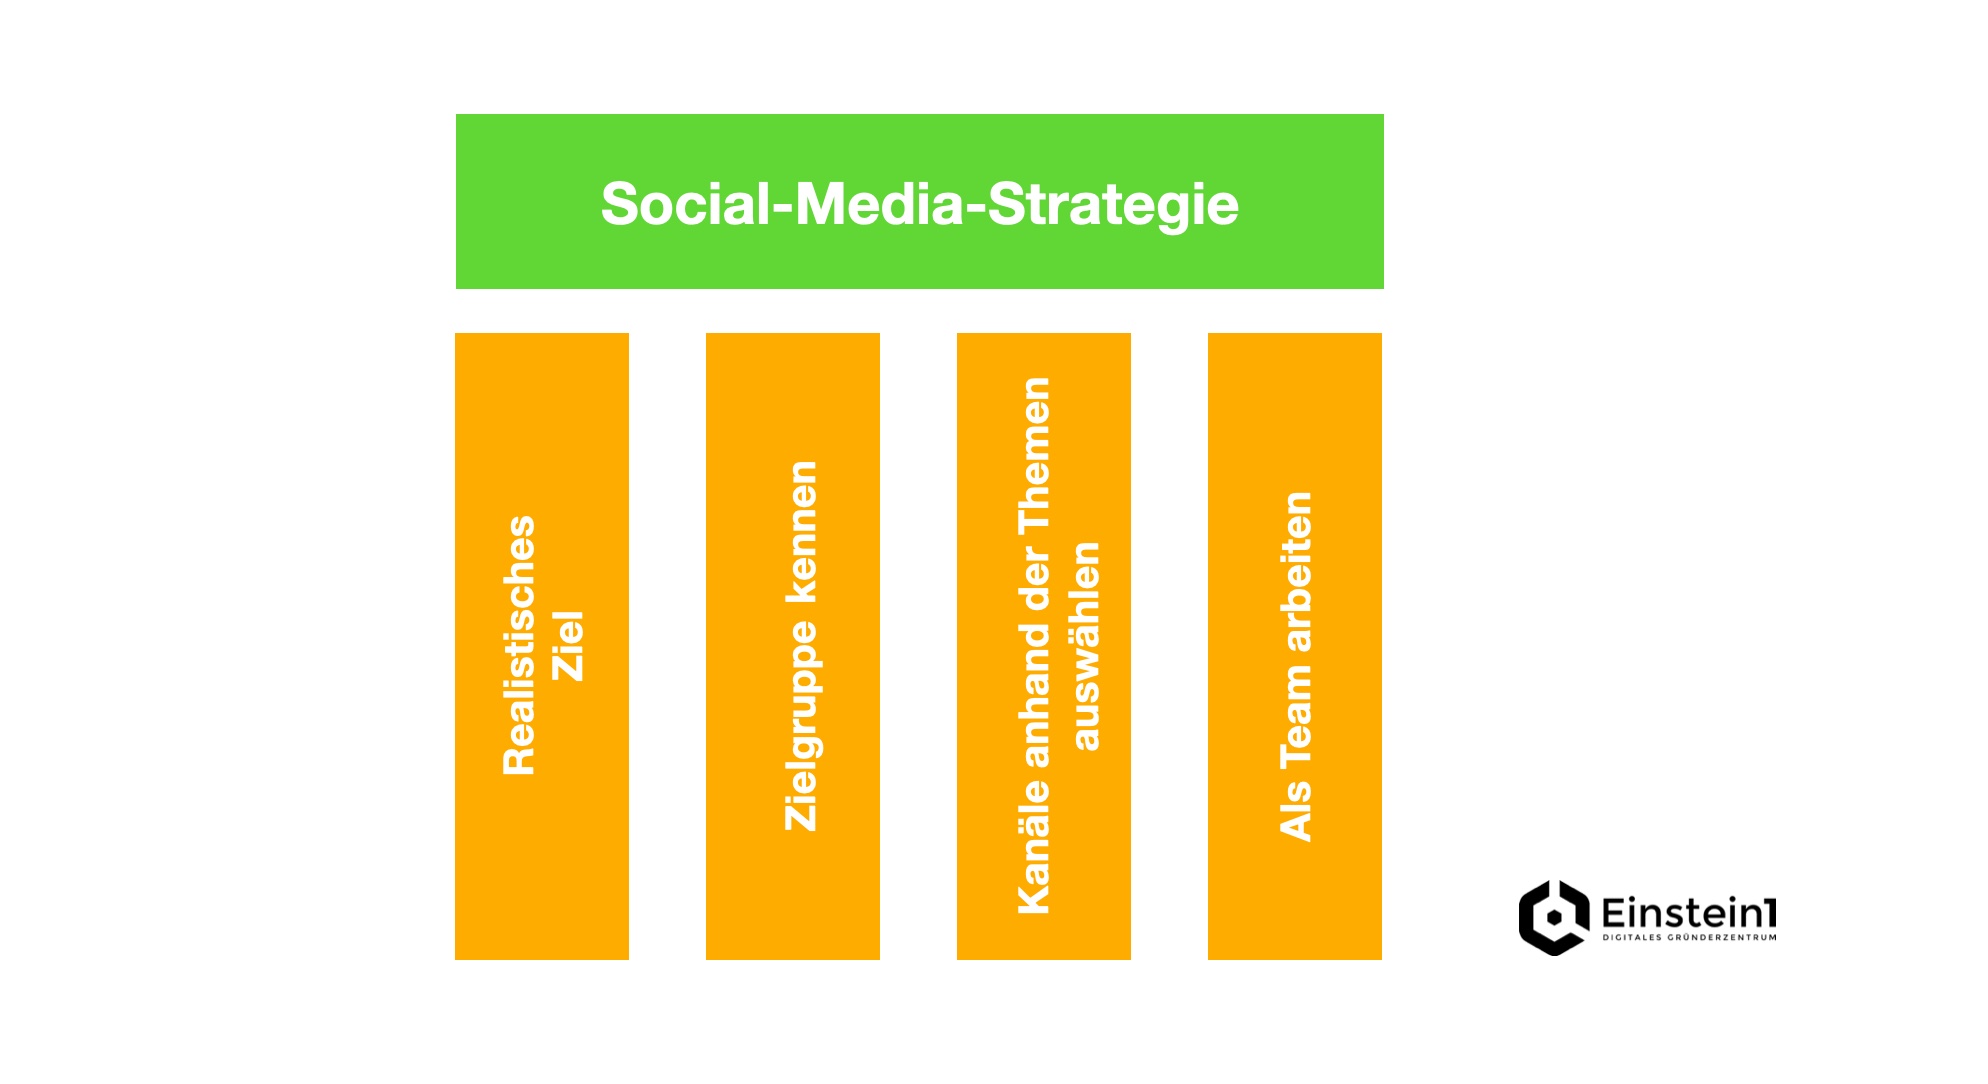 social-media-strategie-für-startups-4-säulen-einstein1